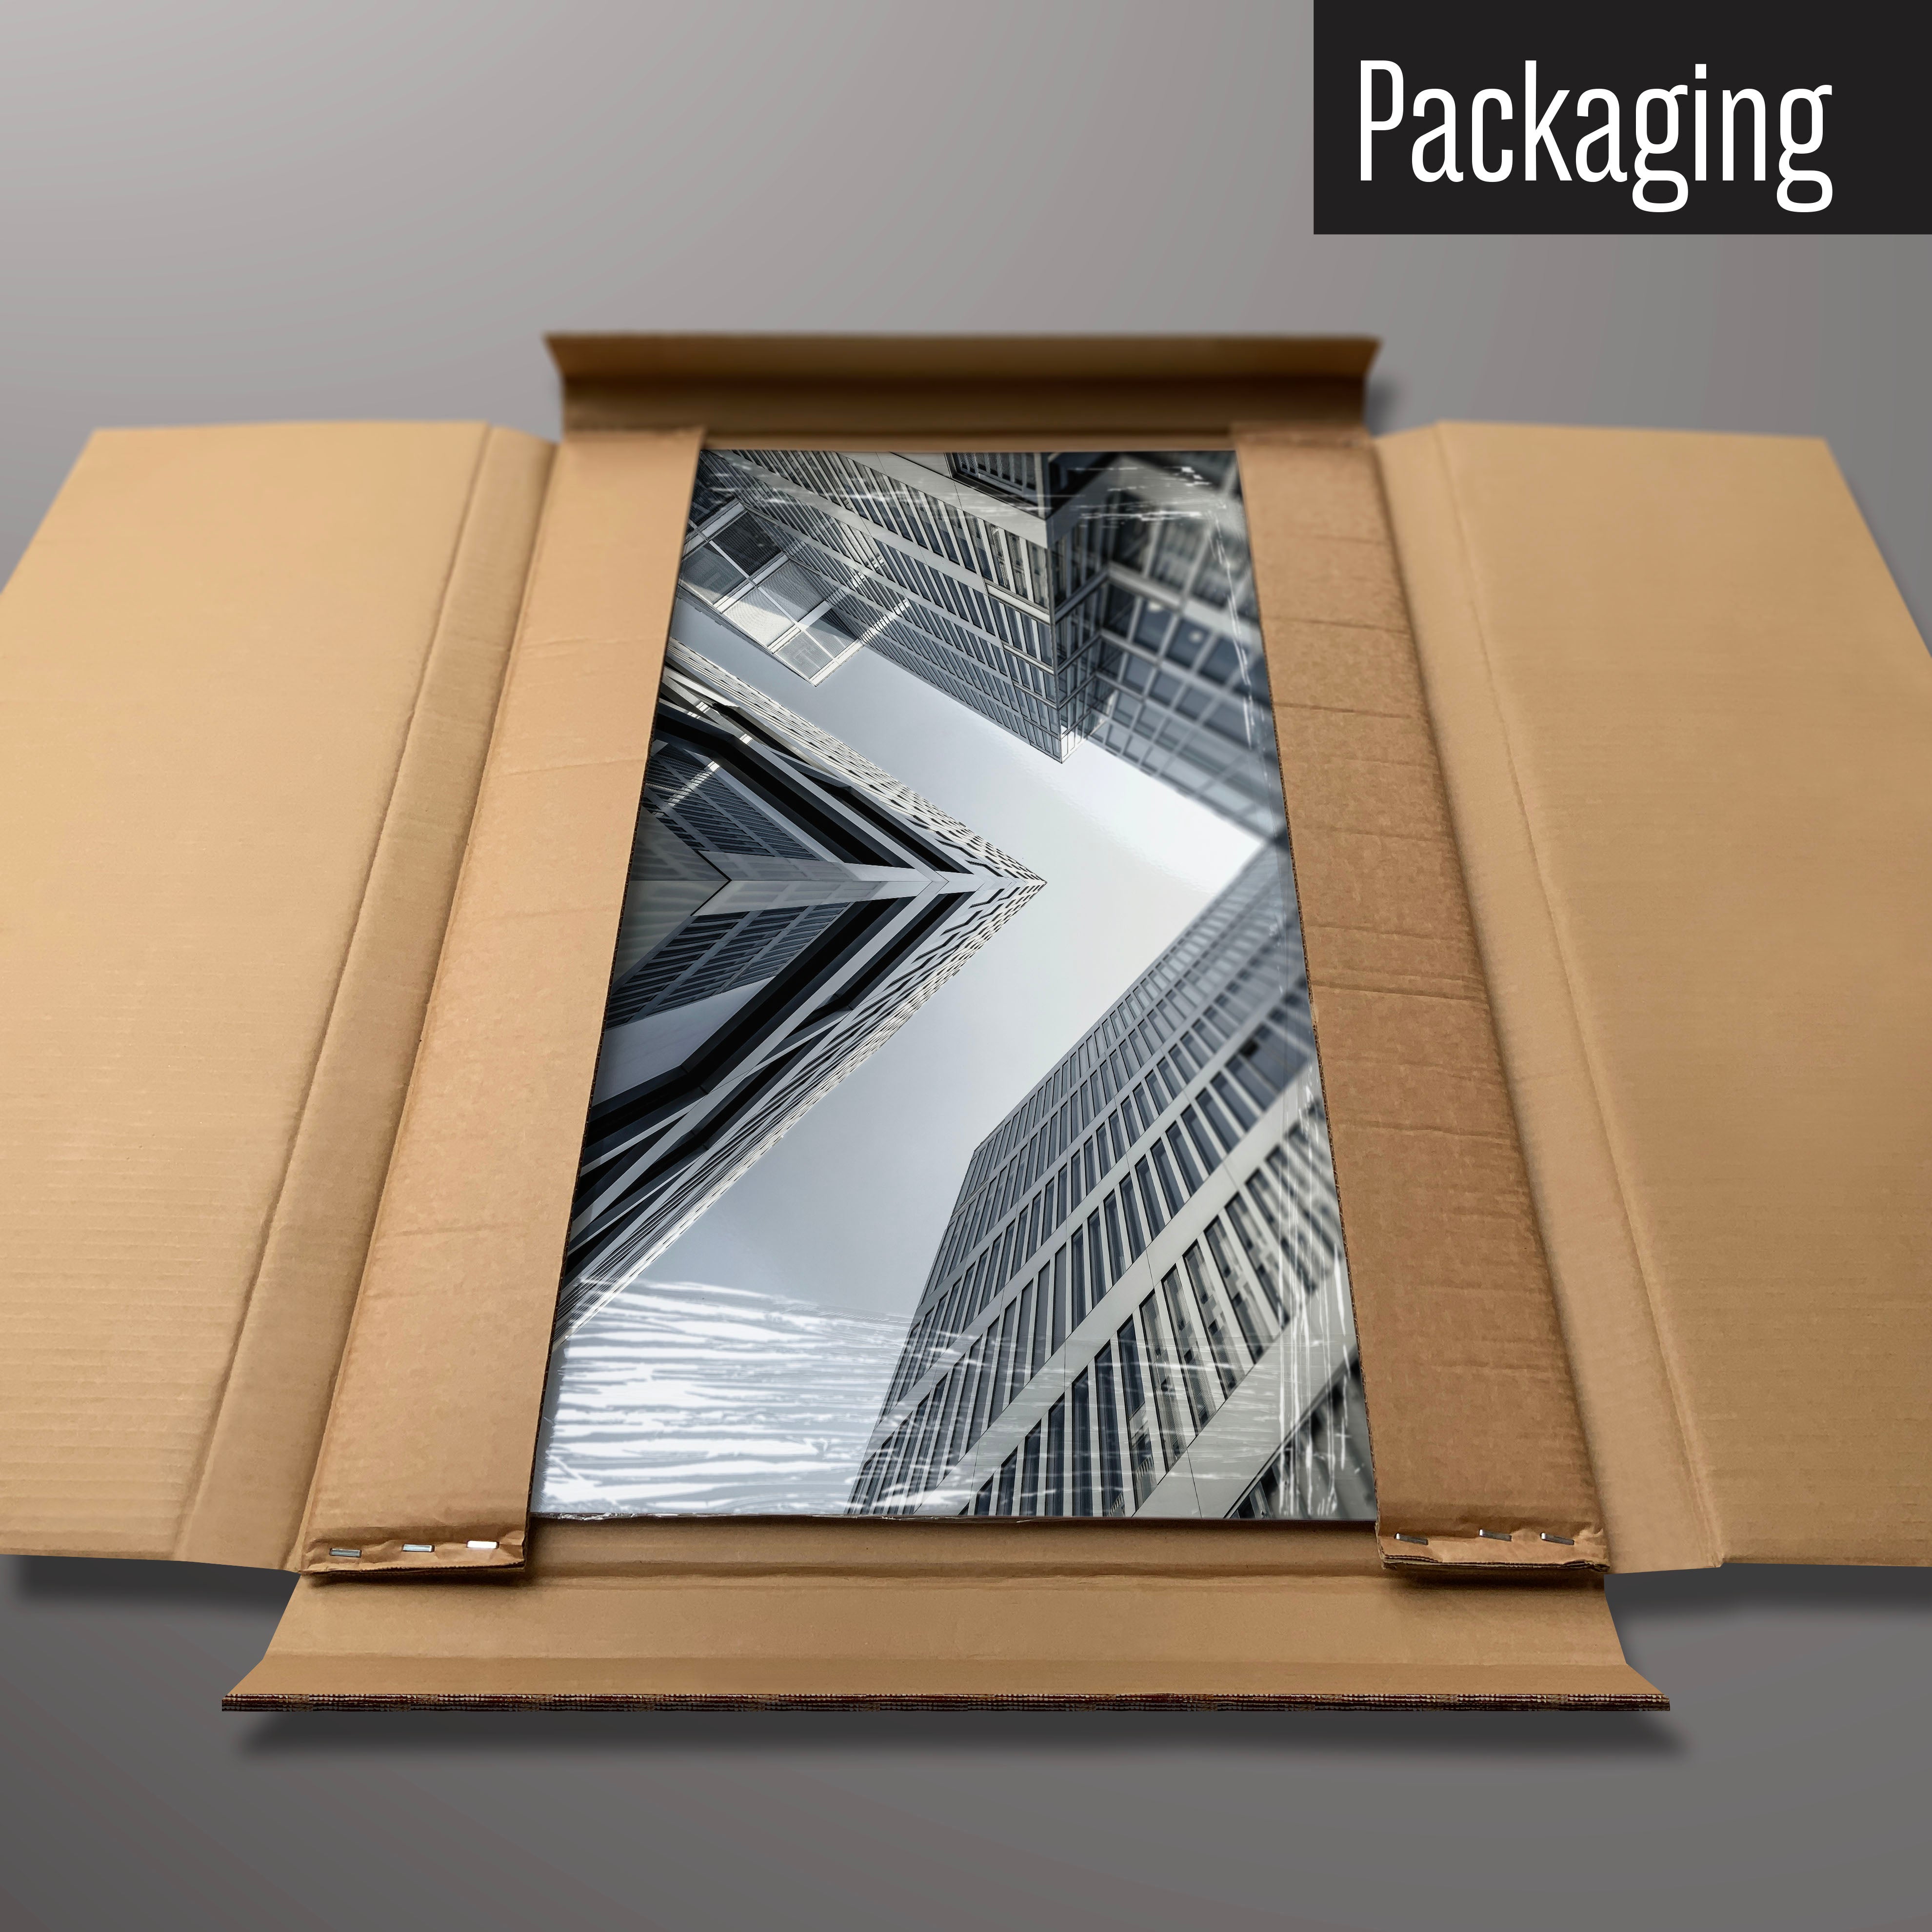 A Zürich Skyscrapers magnetic board in it’s cardboard packaging